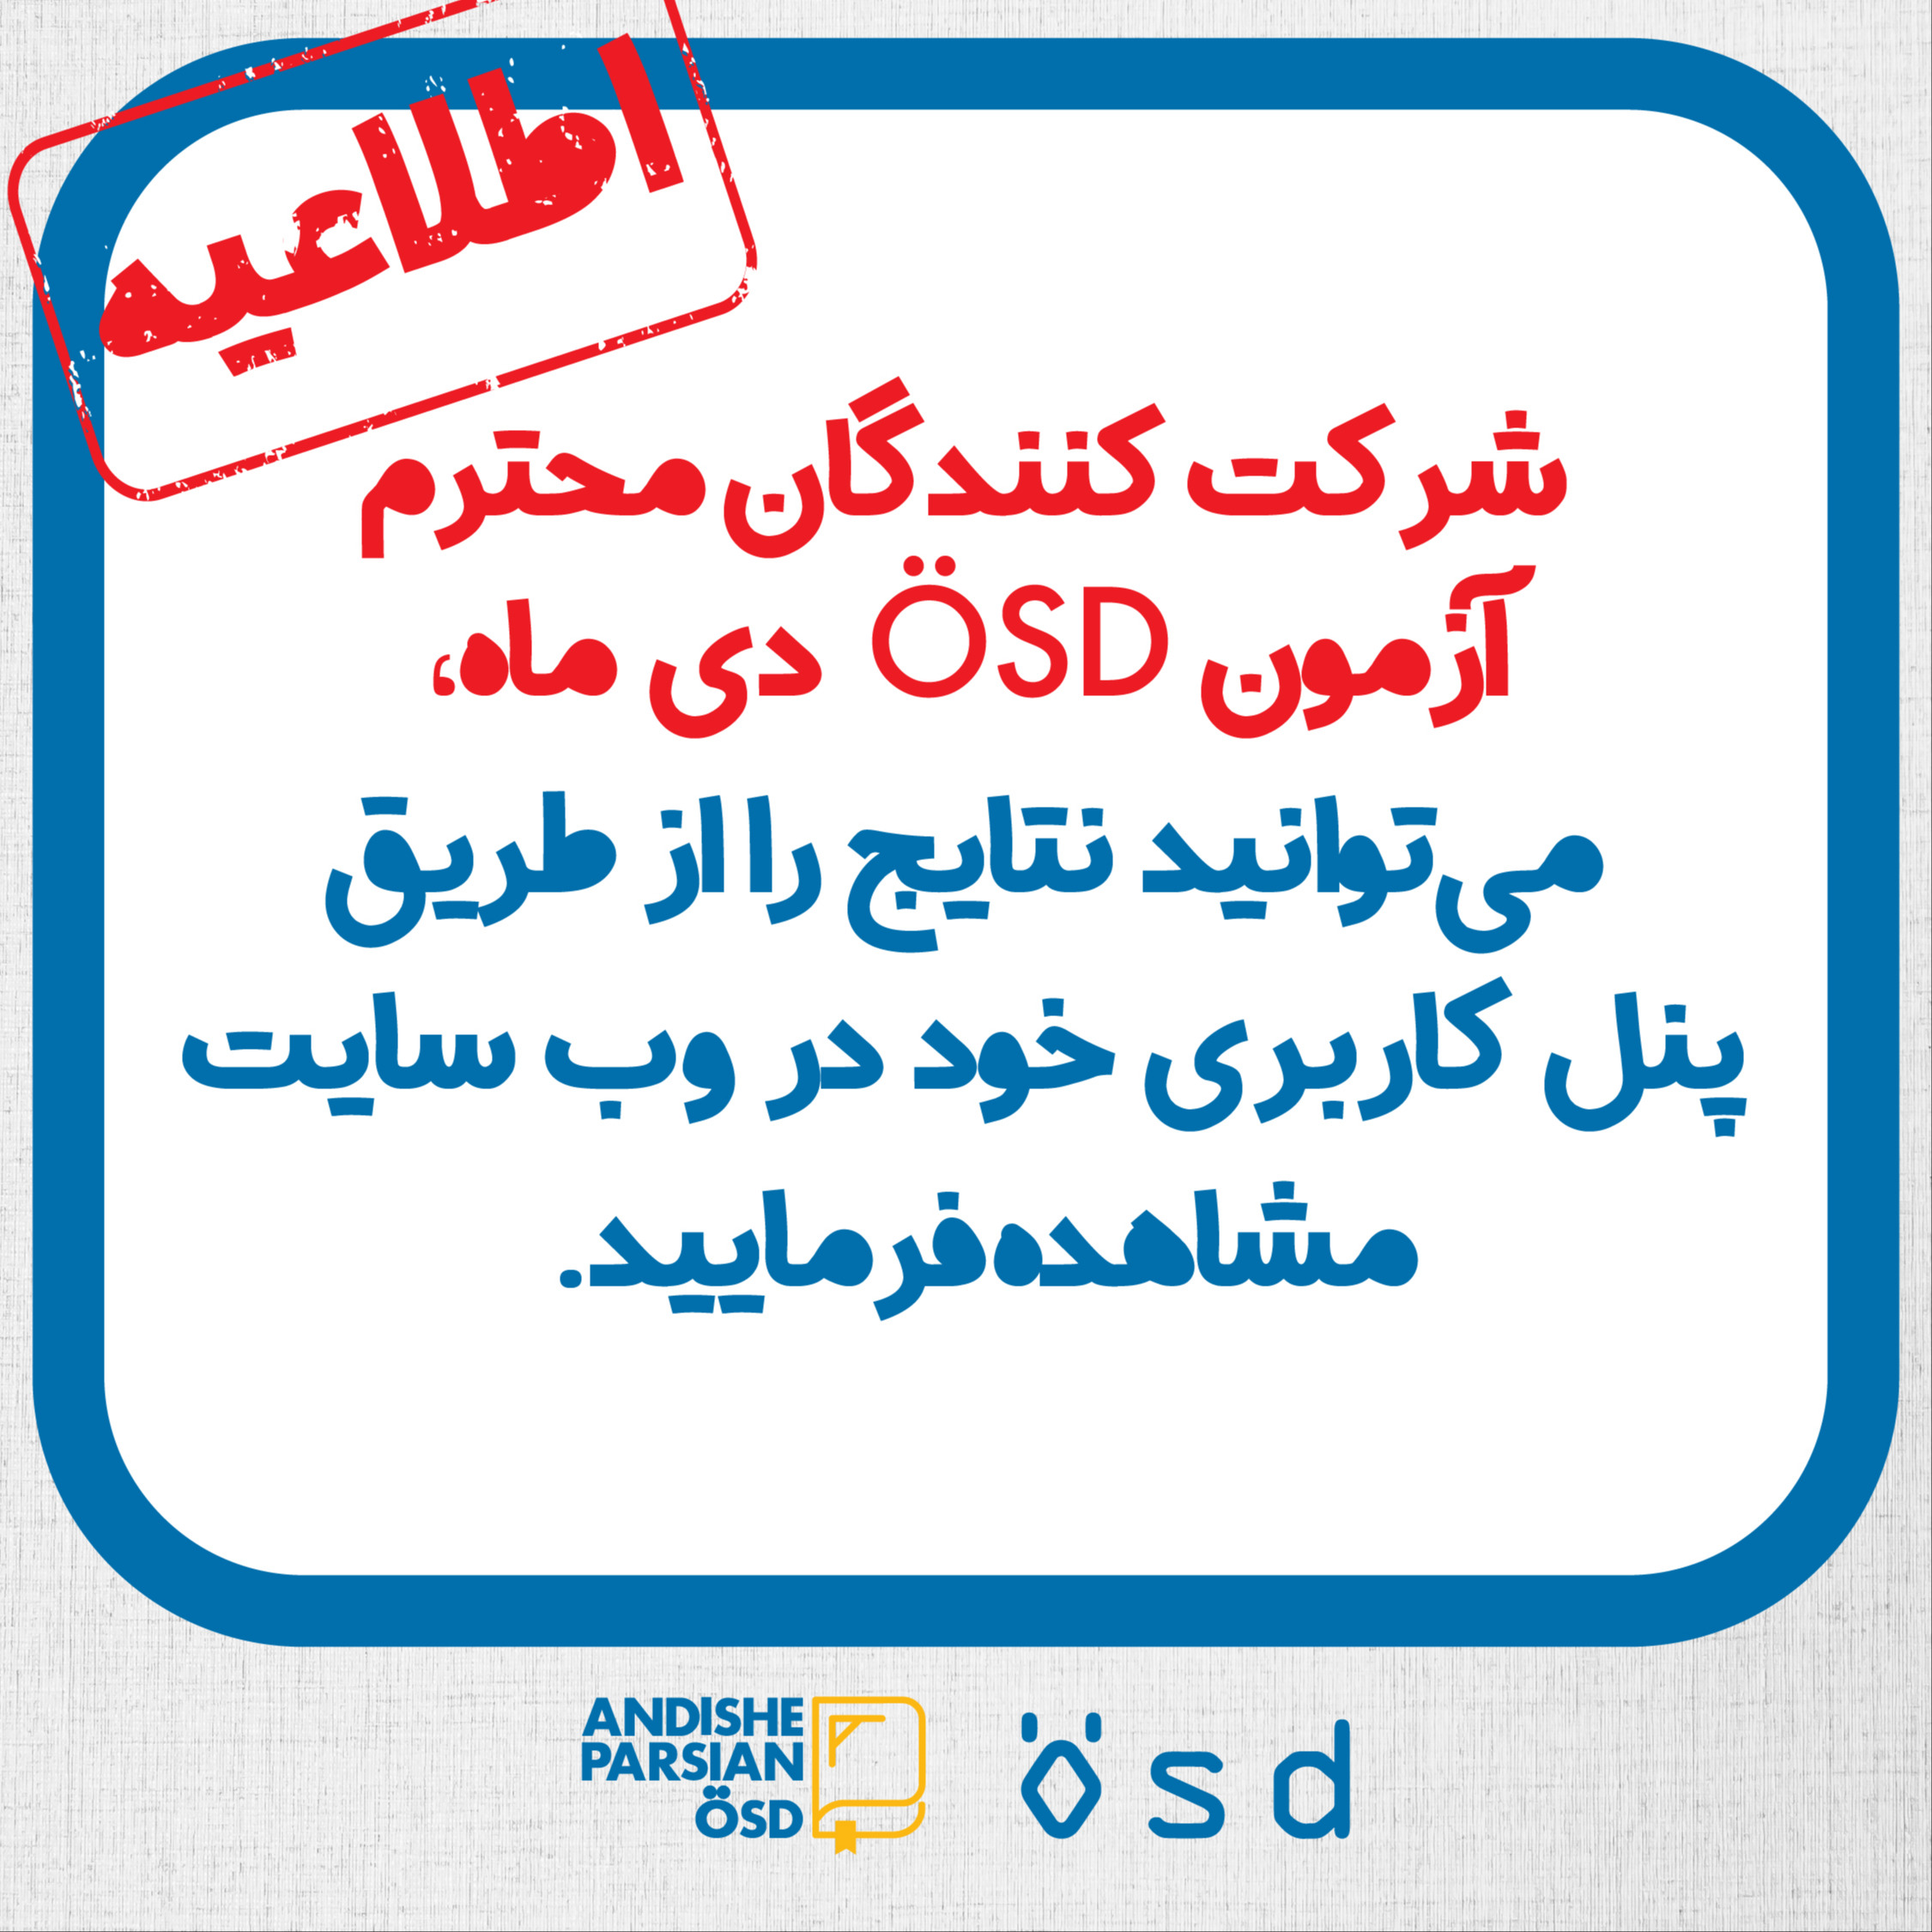 اعلام نتایج آزمون ÖSD  دی ماه